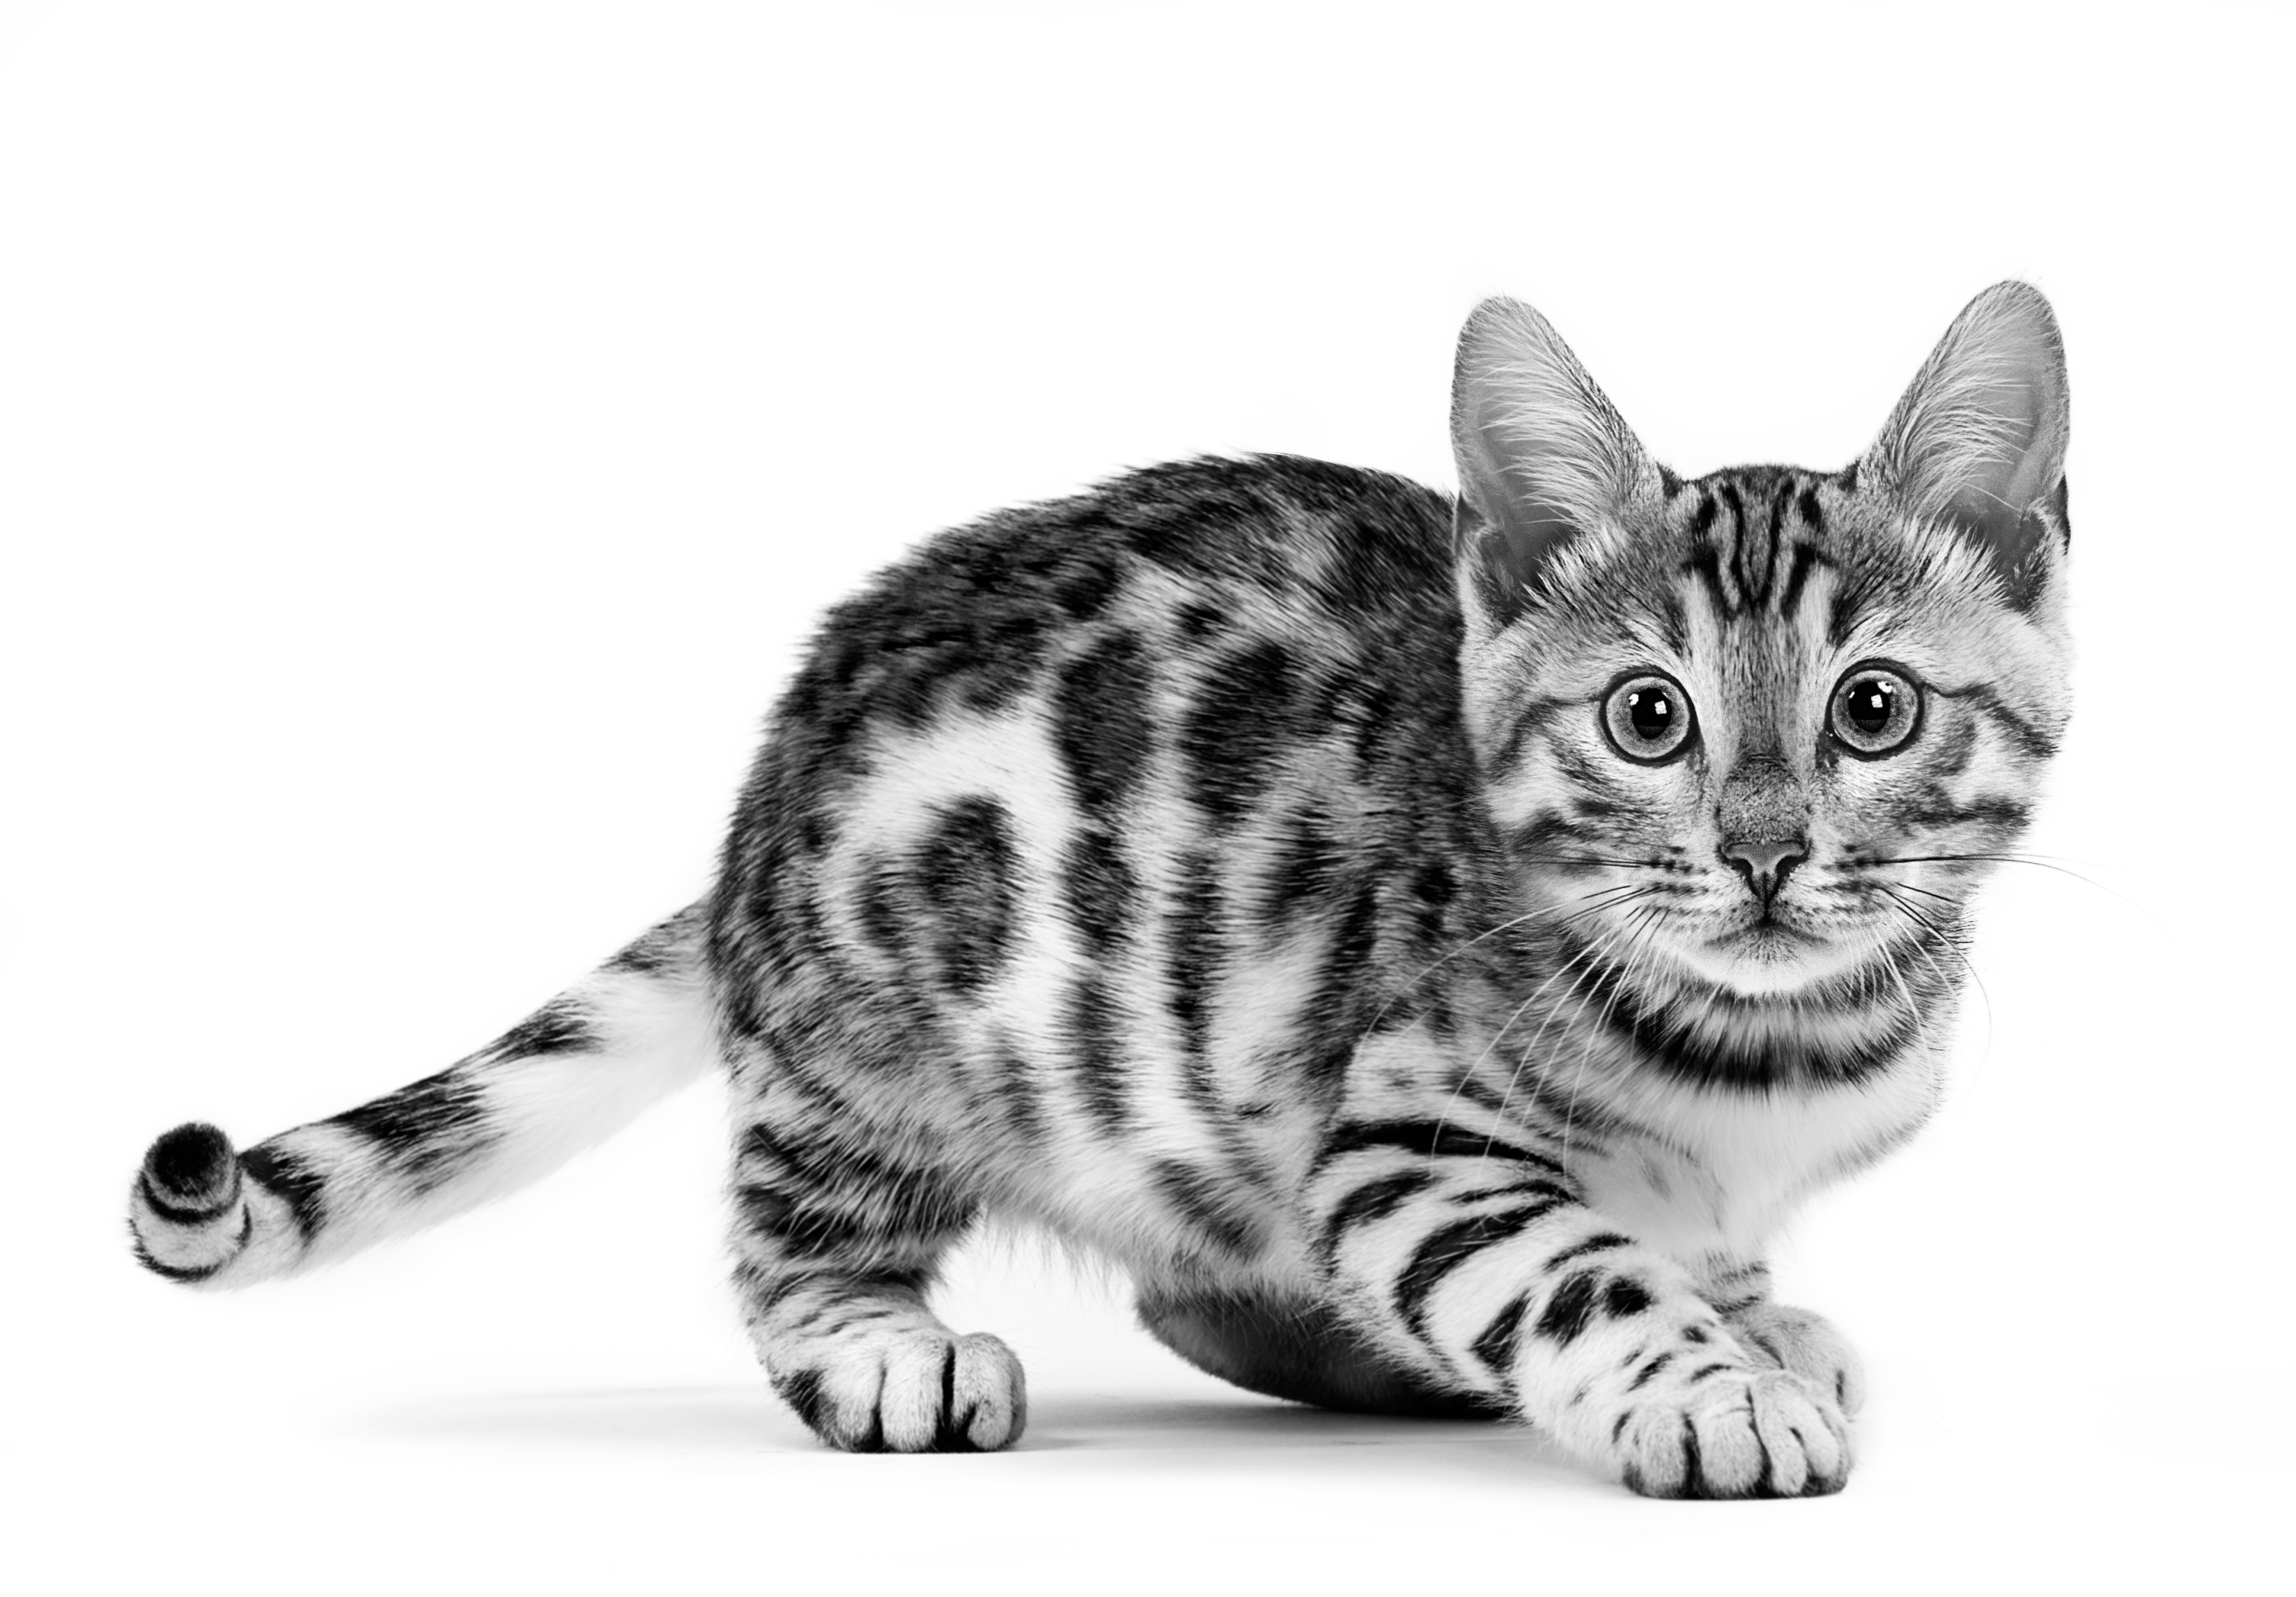 Bengal kitten crouching in black and white